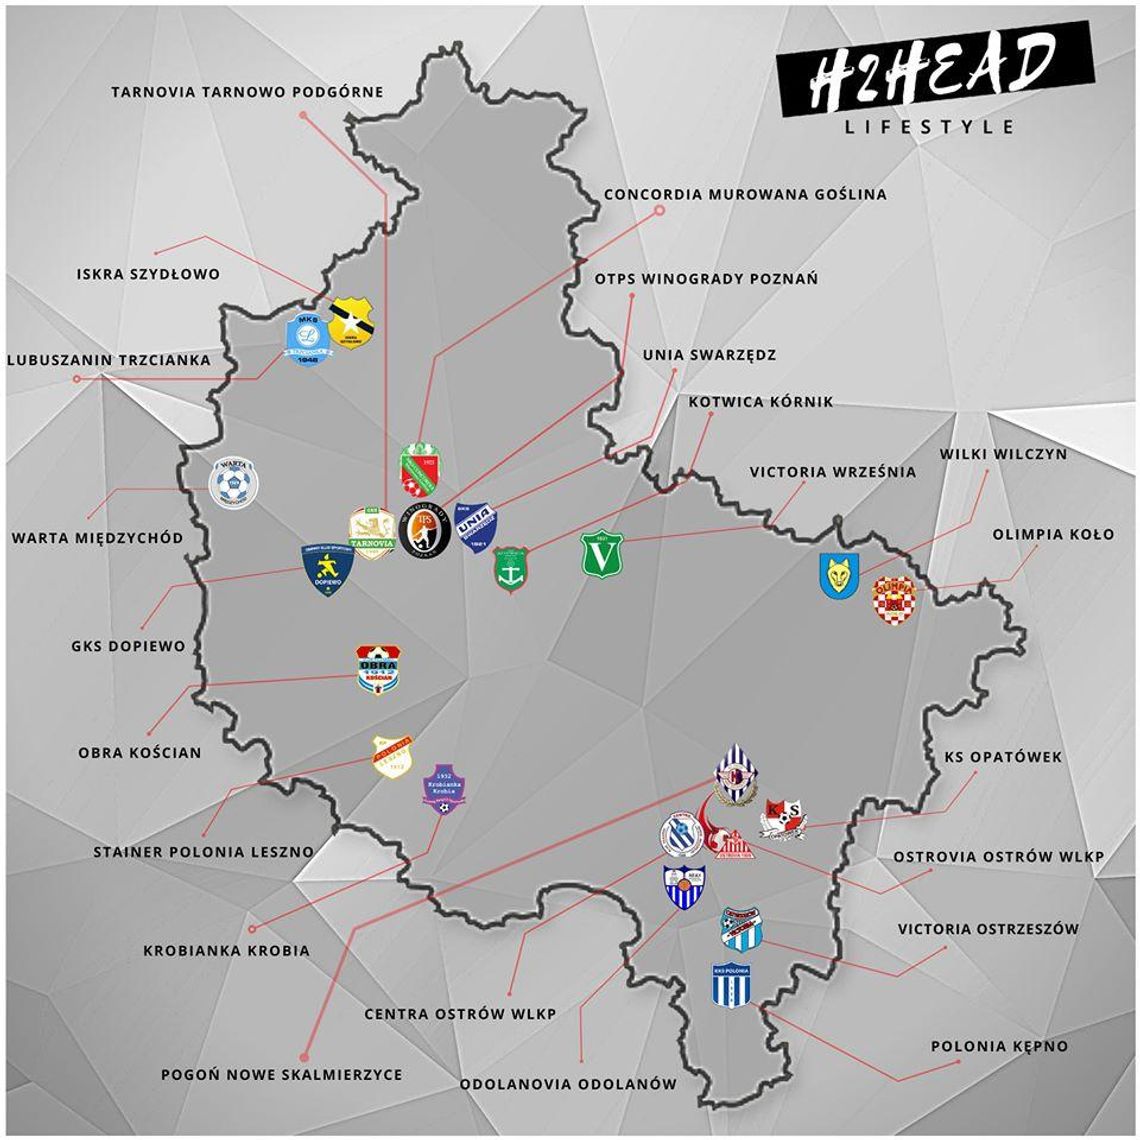 22 drużyny w IV lidze wielkopolskiej w sezonie 2020/2021